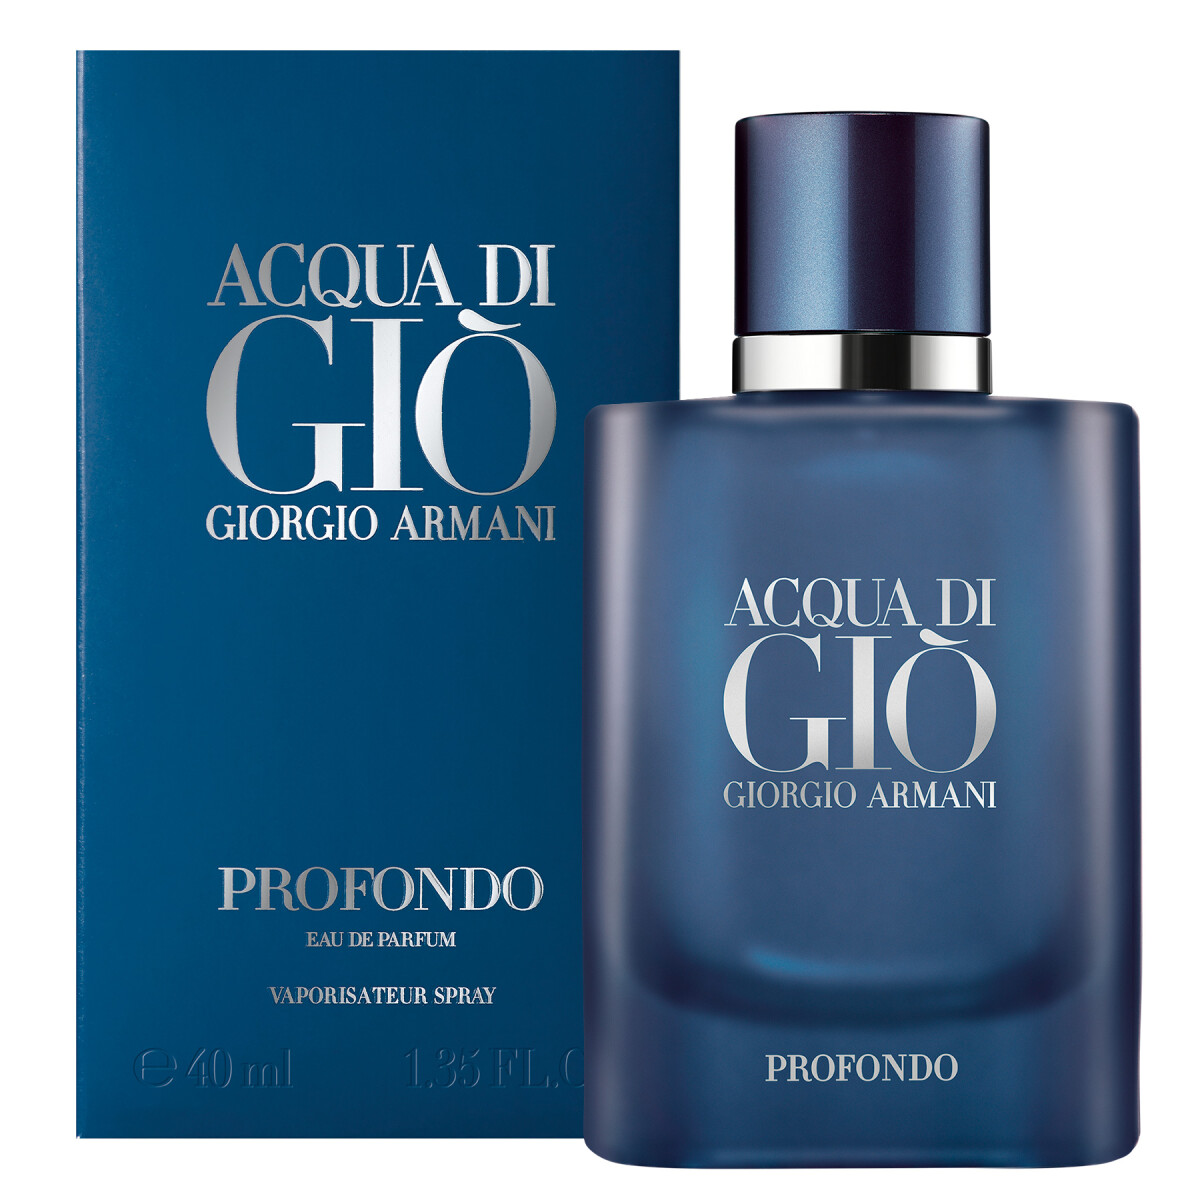 Perfume Acqua Di Gio Profondo Edp 40 Ml. 